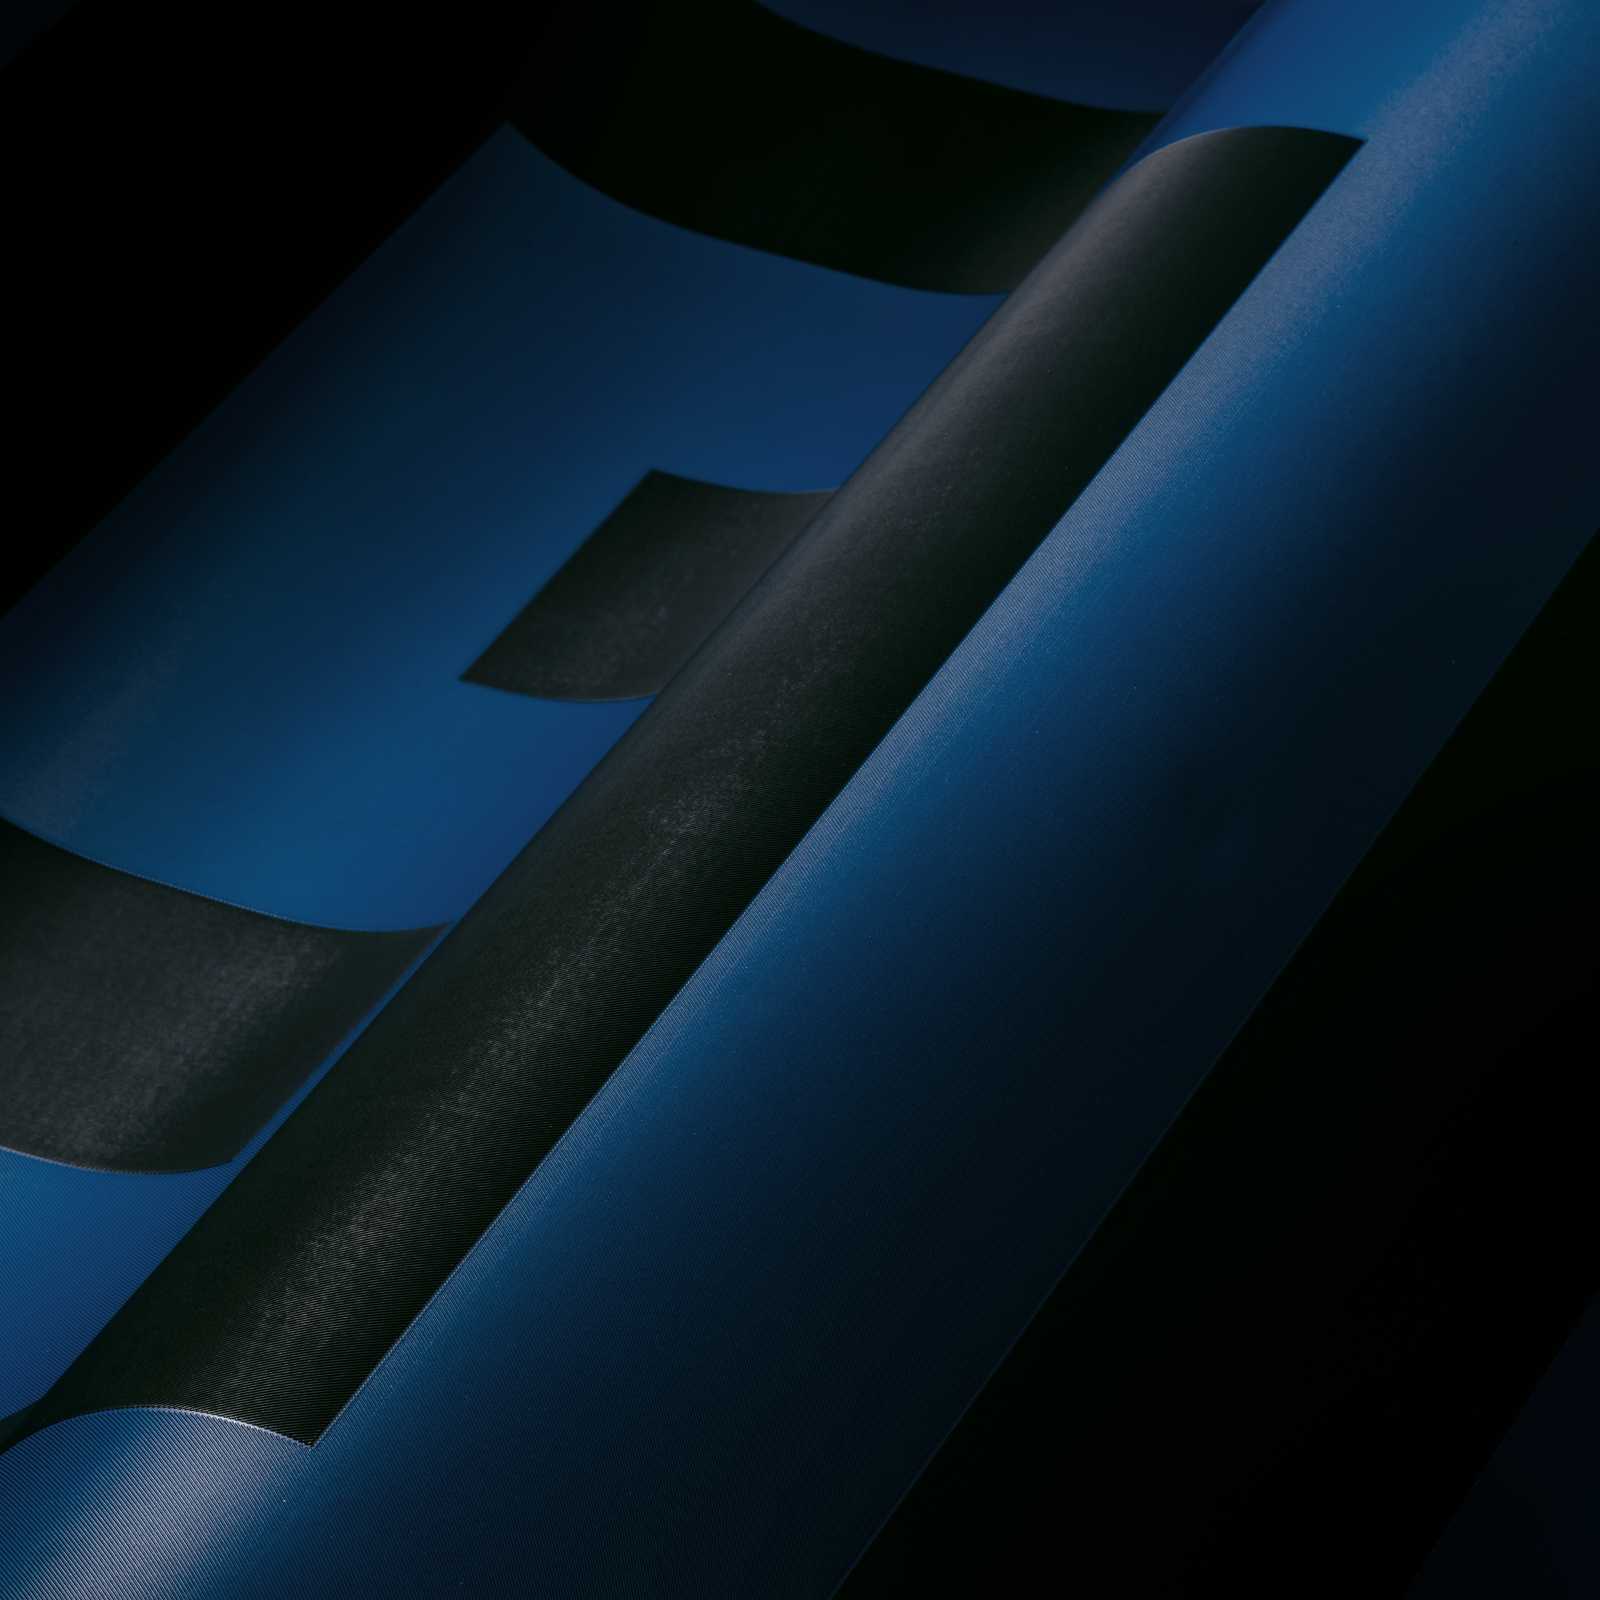             VERSACE Tapete griechischer Schlüssel Design – Blau, Schwarz
        